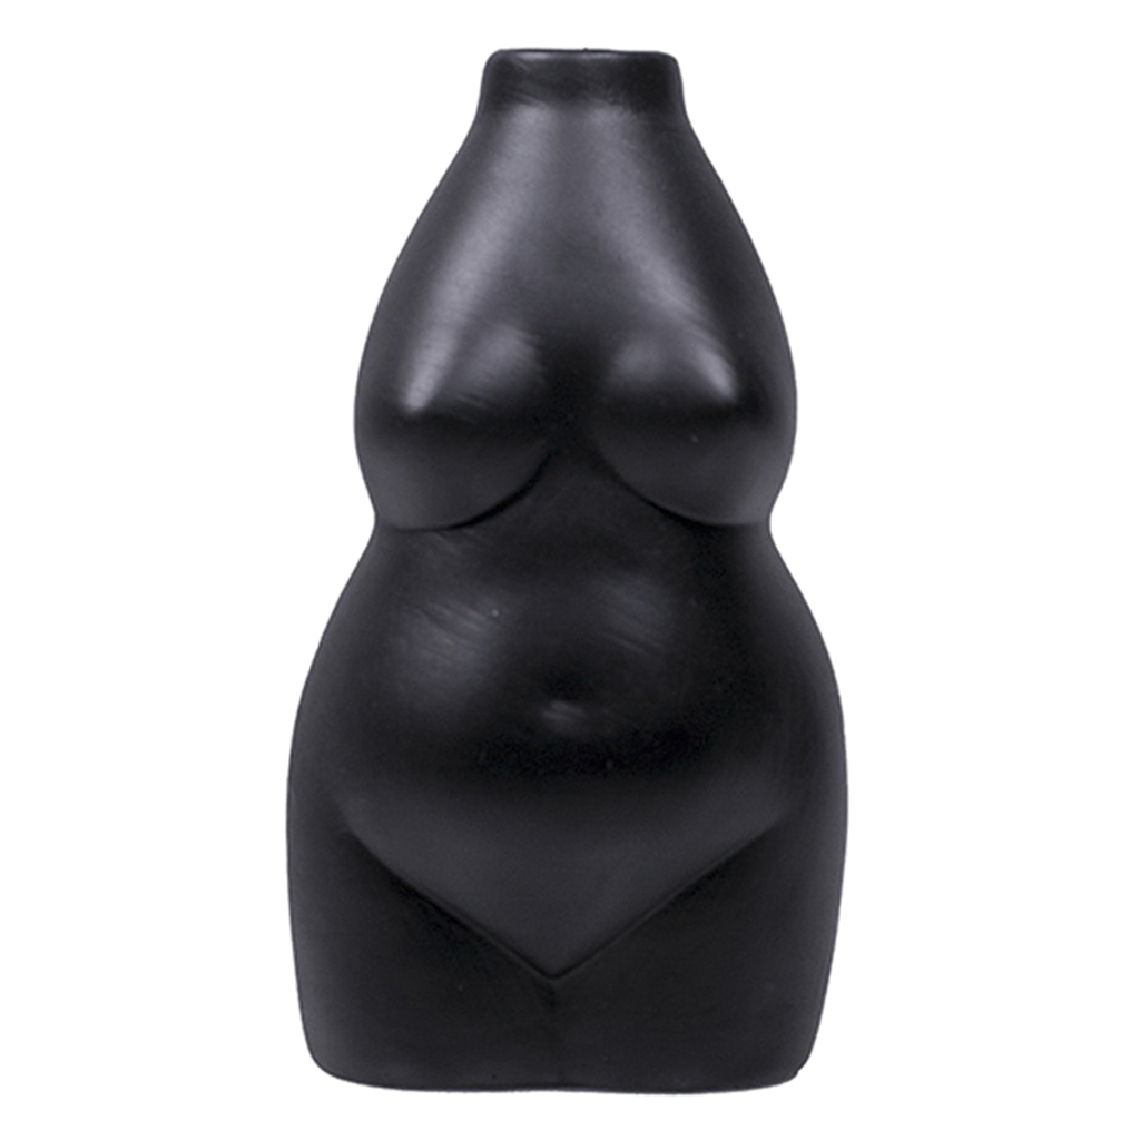 marque generique - Corps Féminin Vase Statue Bureau Pot De Fleur Séché Planteur Décor à La Maison Noir - Vases